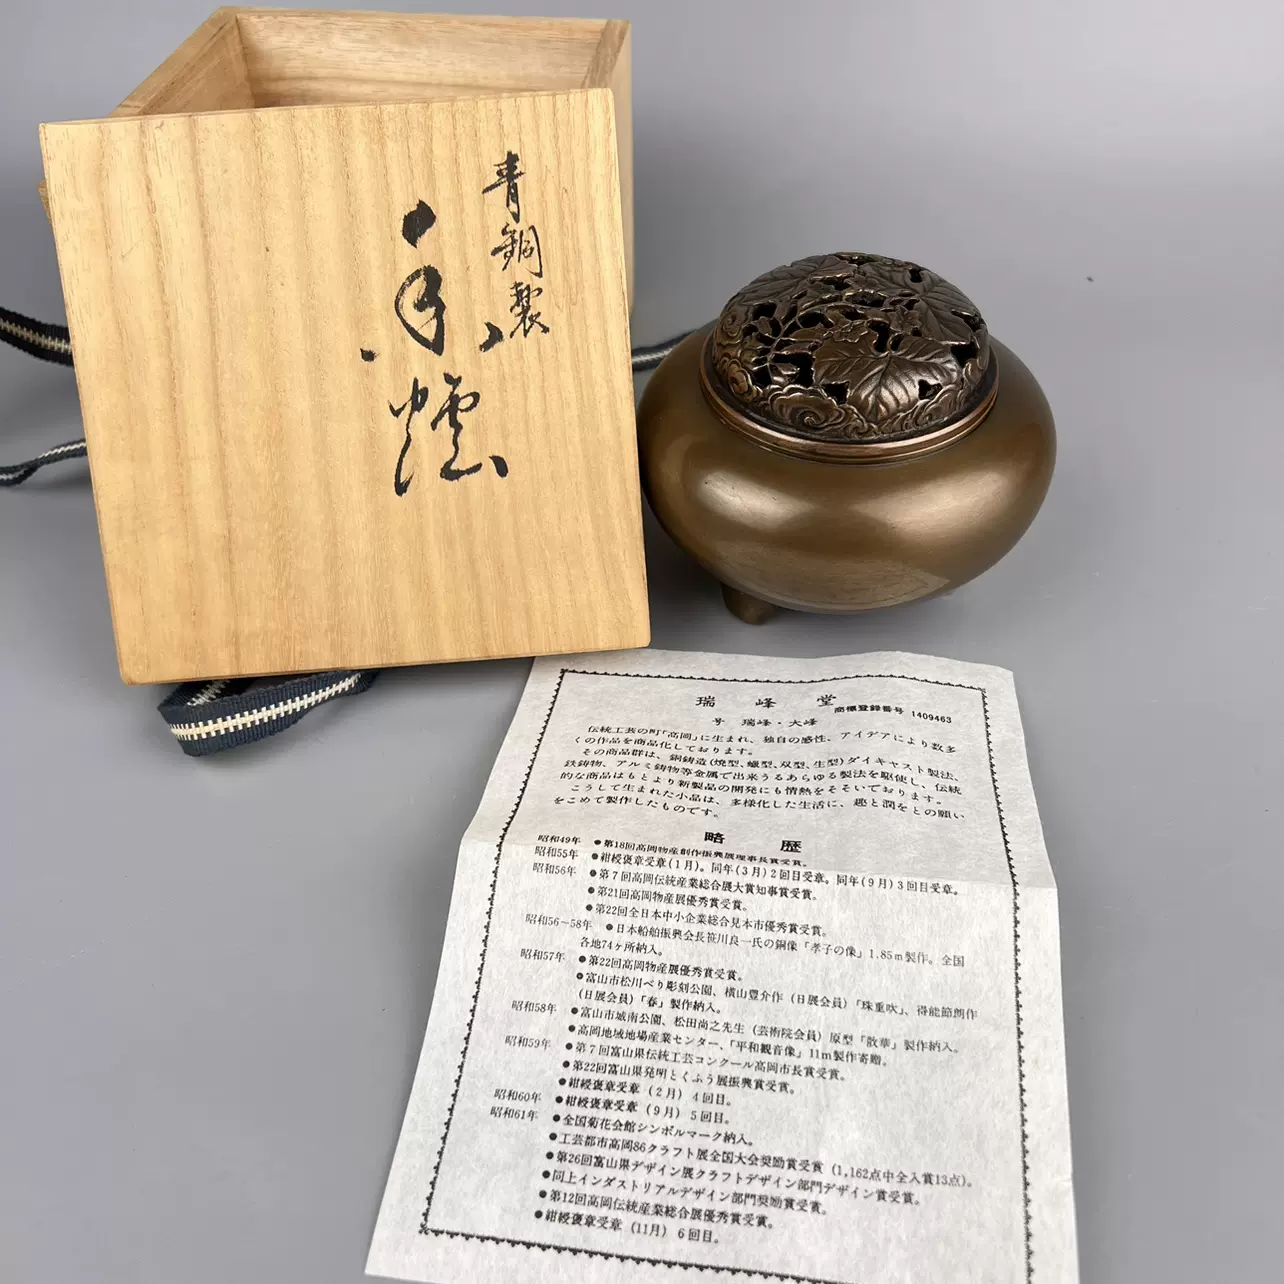 日本回流高岗铜器瑞峰作香炉琴炉尺寸如图轻度磨痕文玩收藏-Taobao